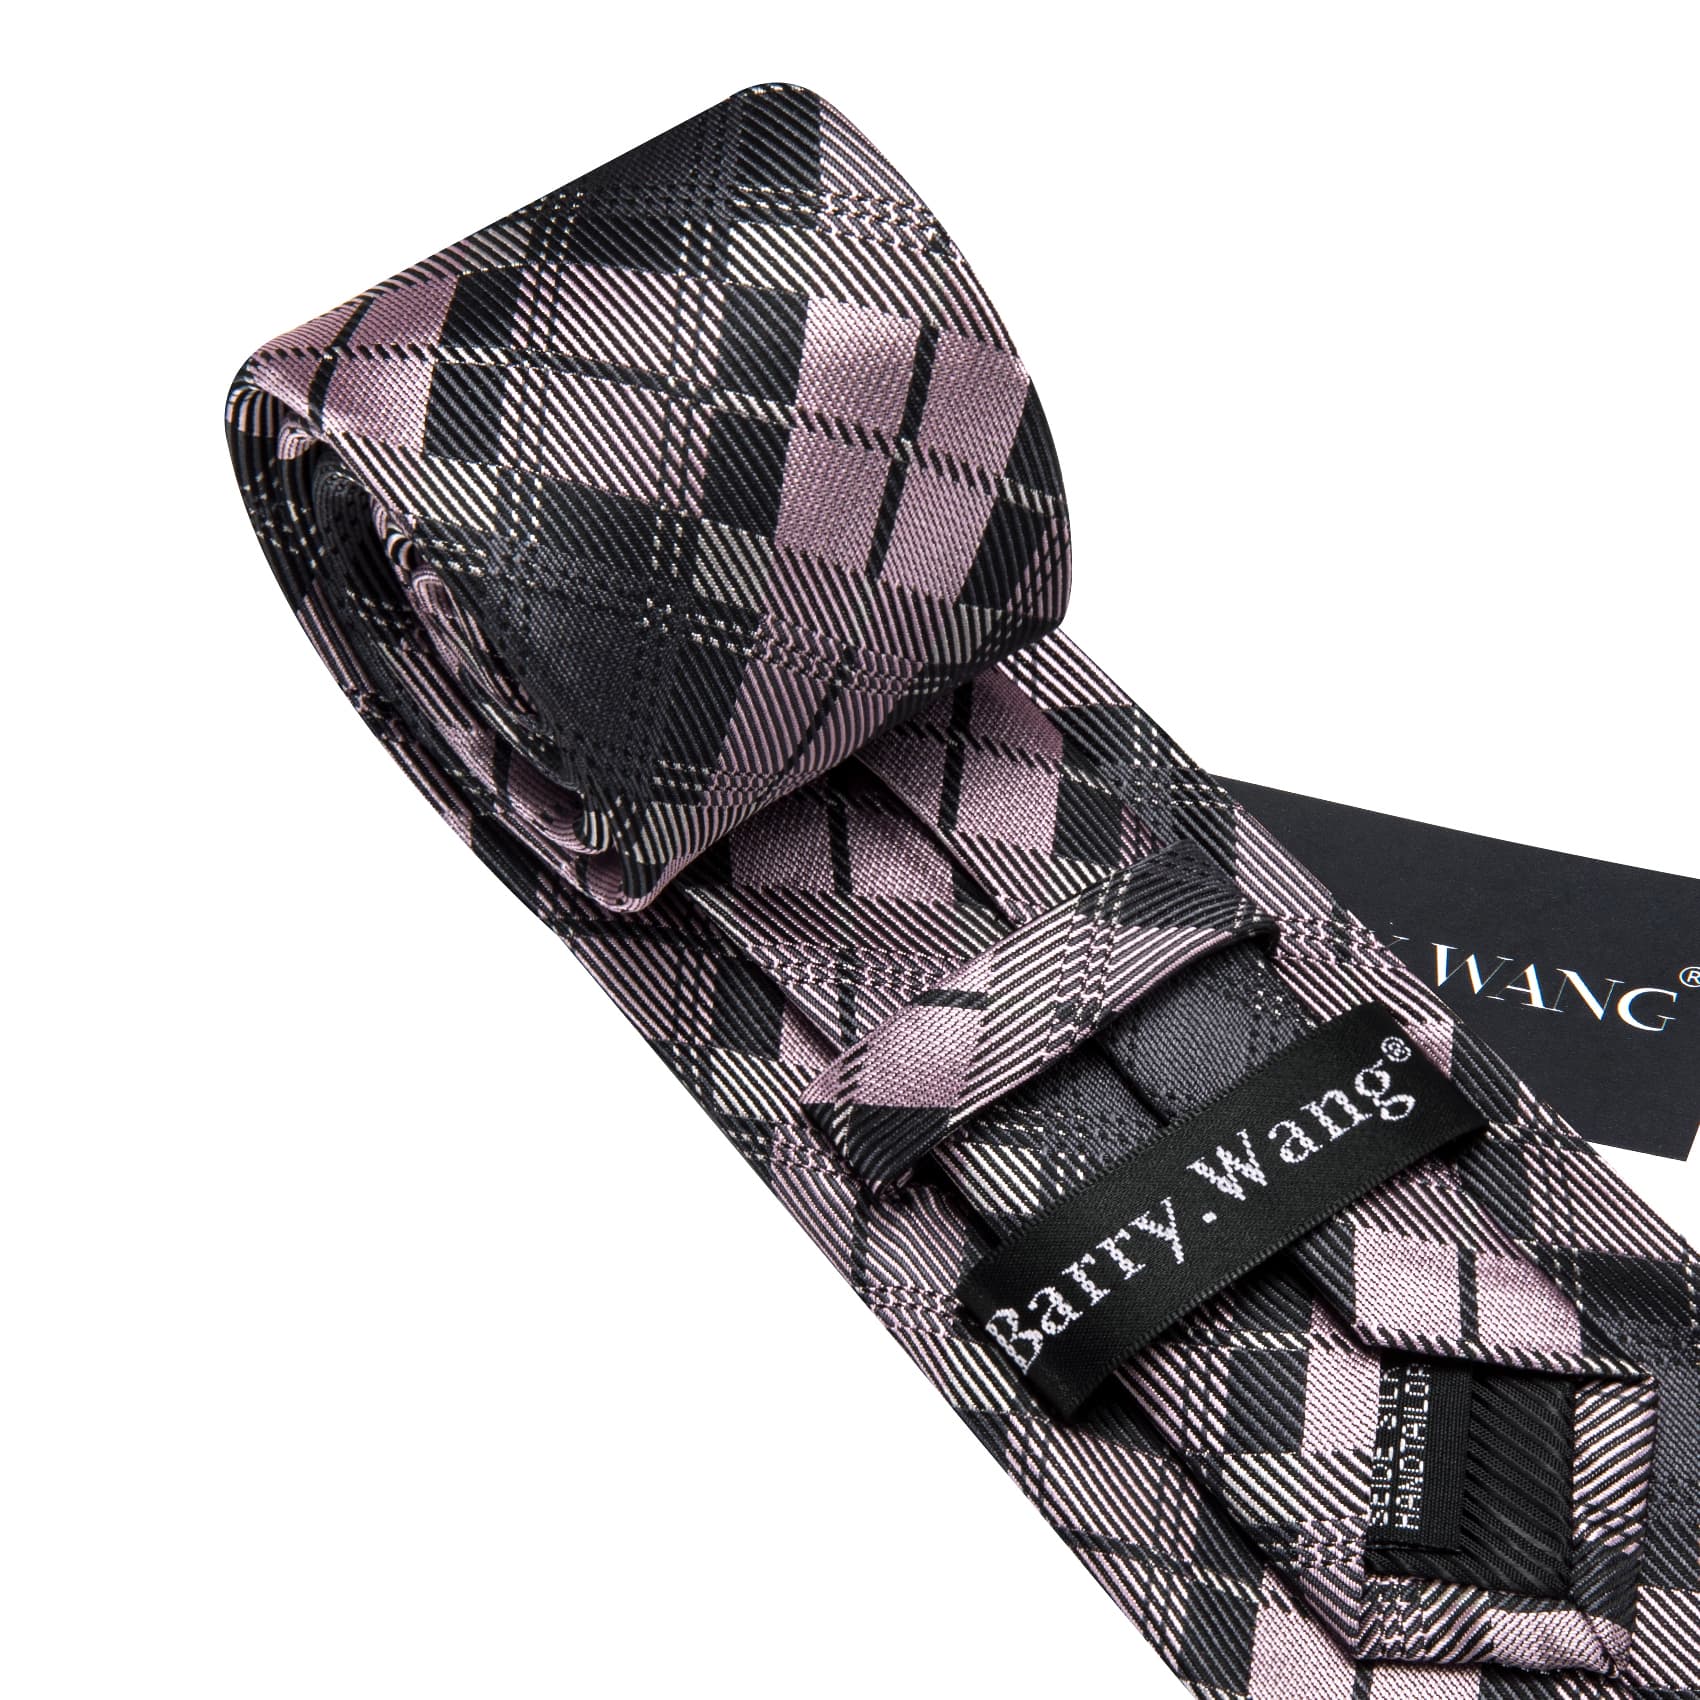 Tie Black Gray Pink Checkered Necktie Hanky Cufflinks Set